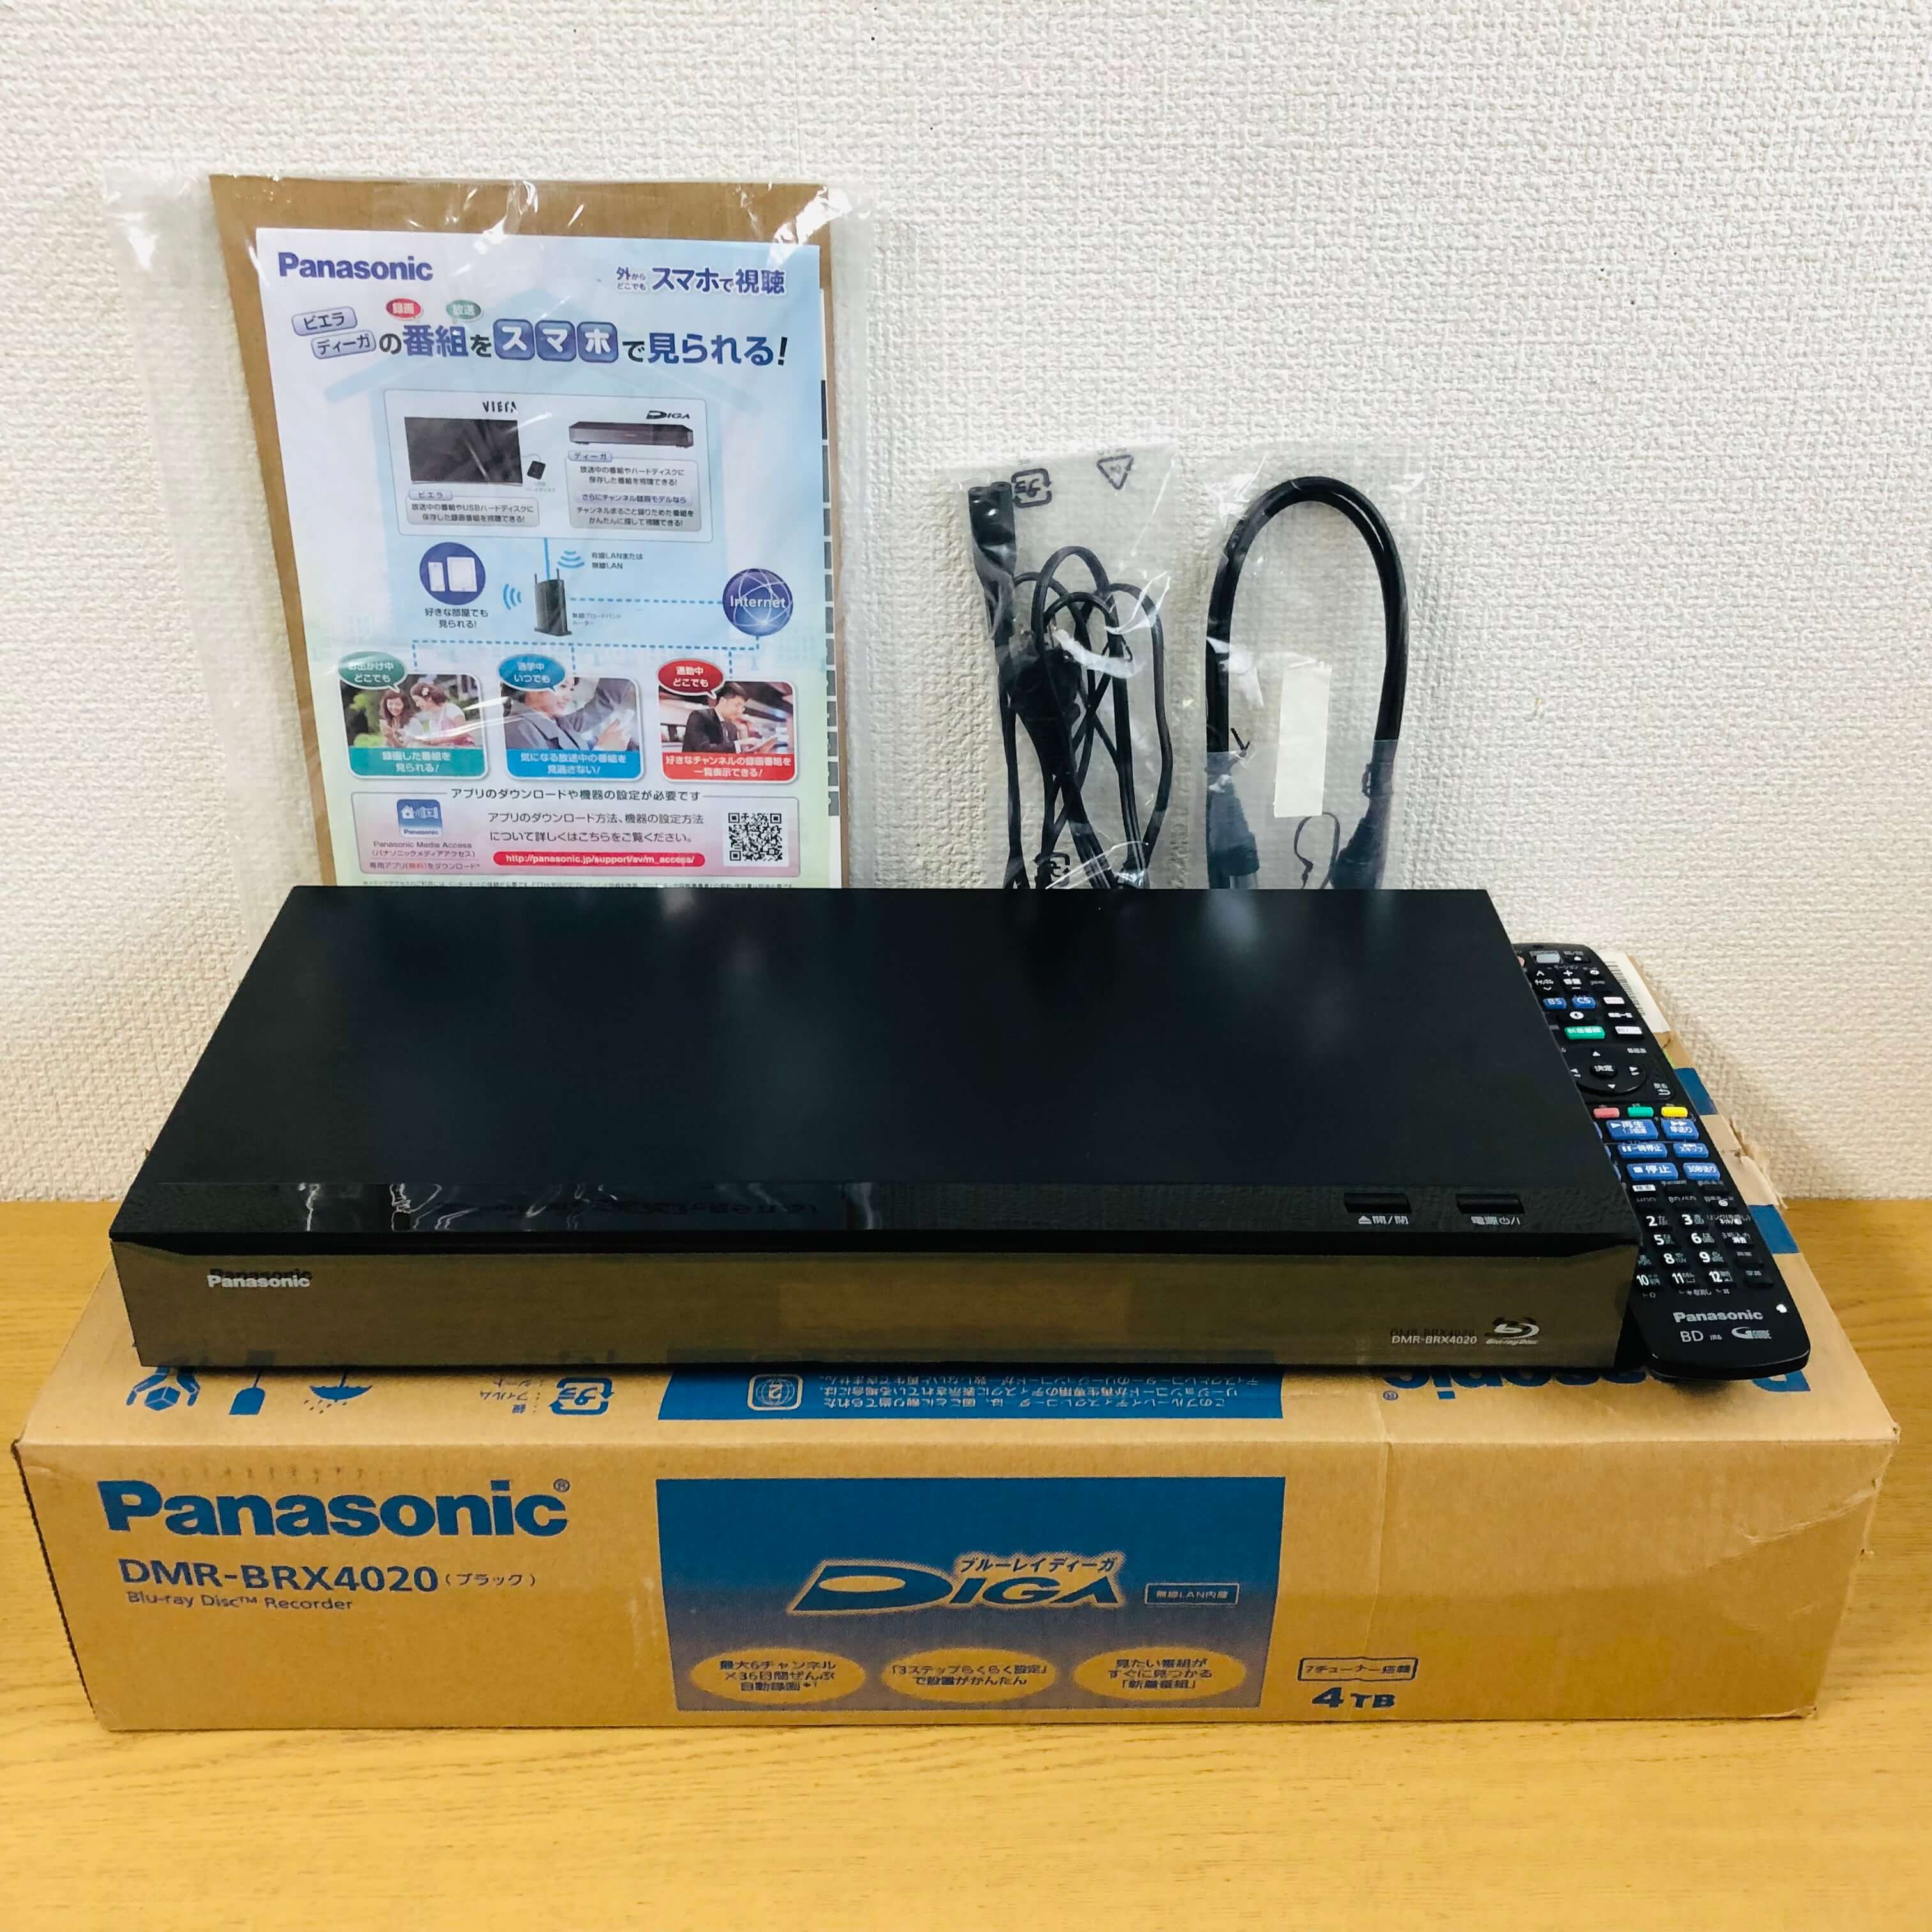 Panasonic ブルーレイレコーダー DMR-BRX4020を神奈川県から宅配買取